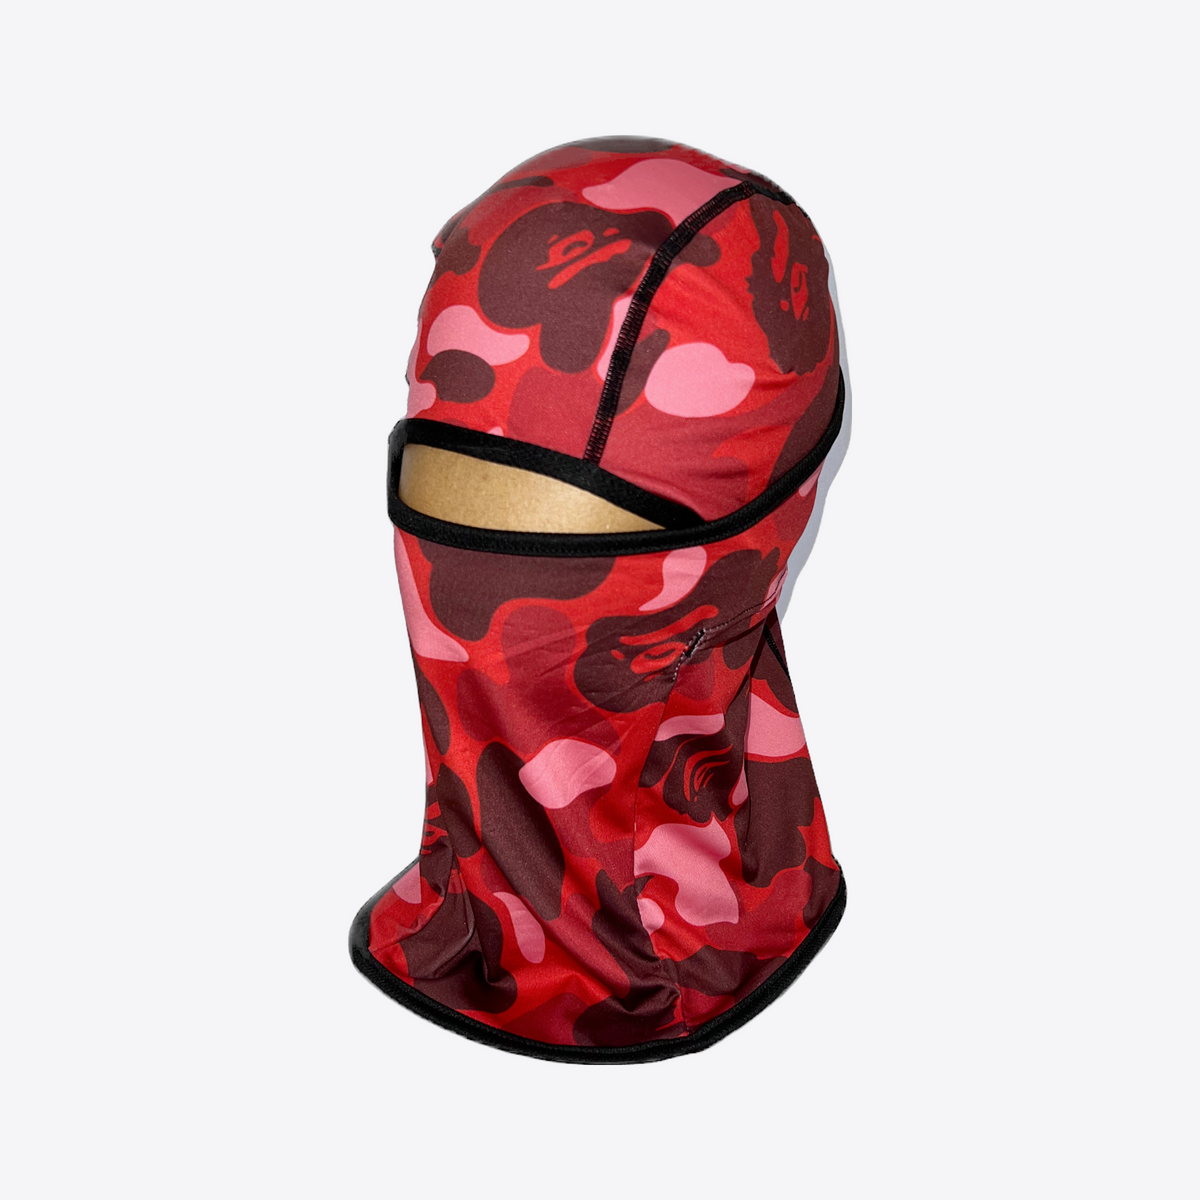 Bape Red Camo Shiesty Mask Balaclava